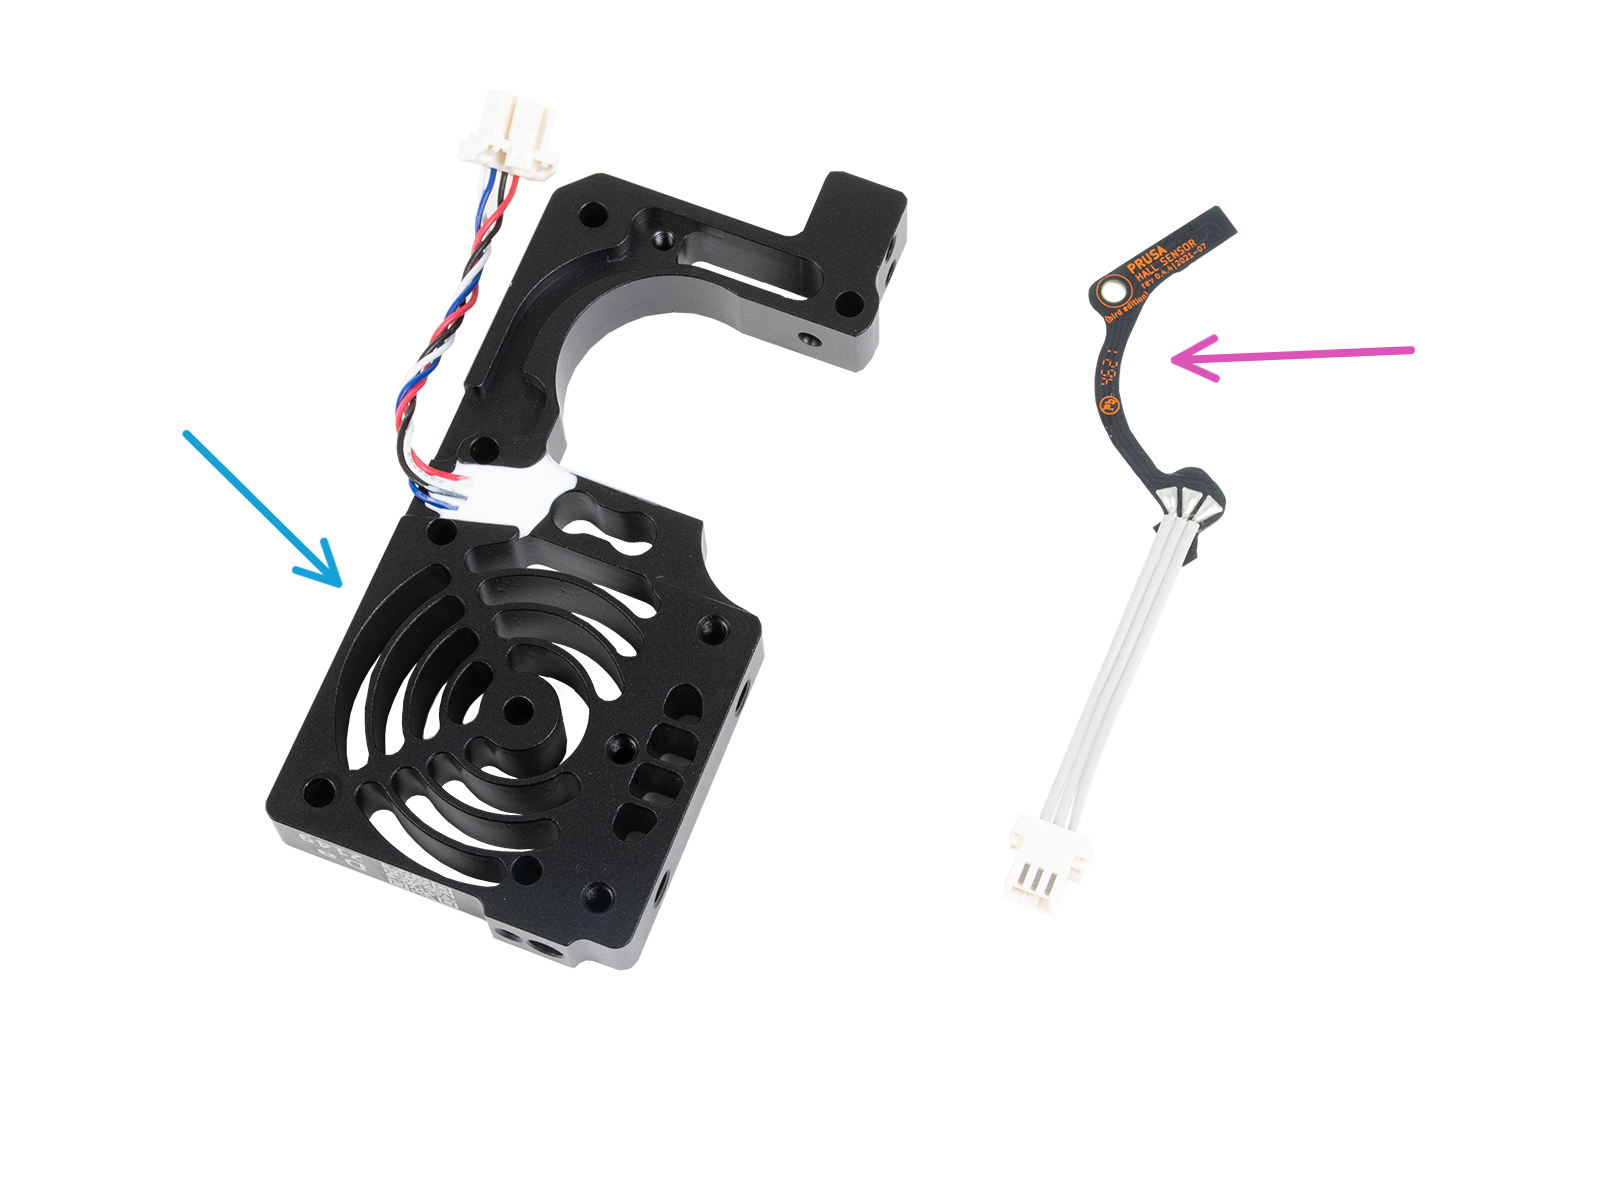 Filament sensor: parts preparation